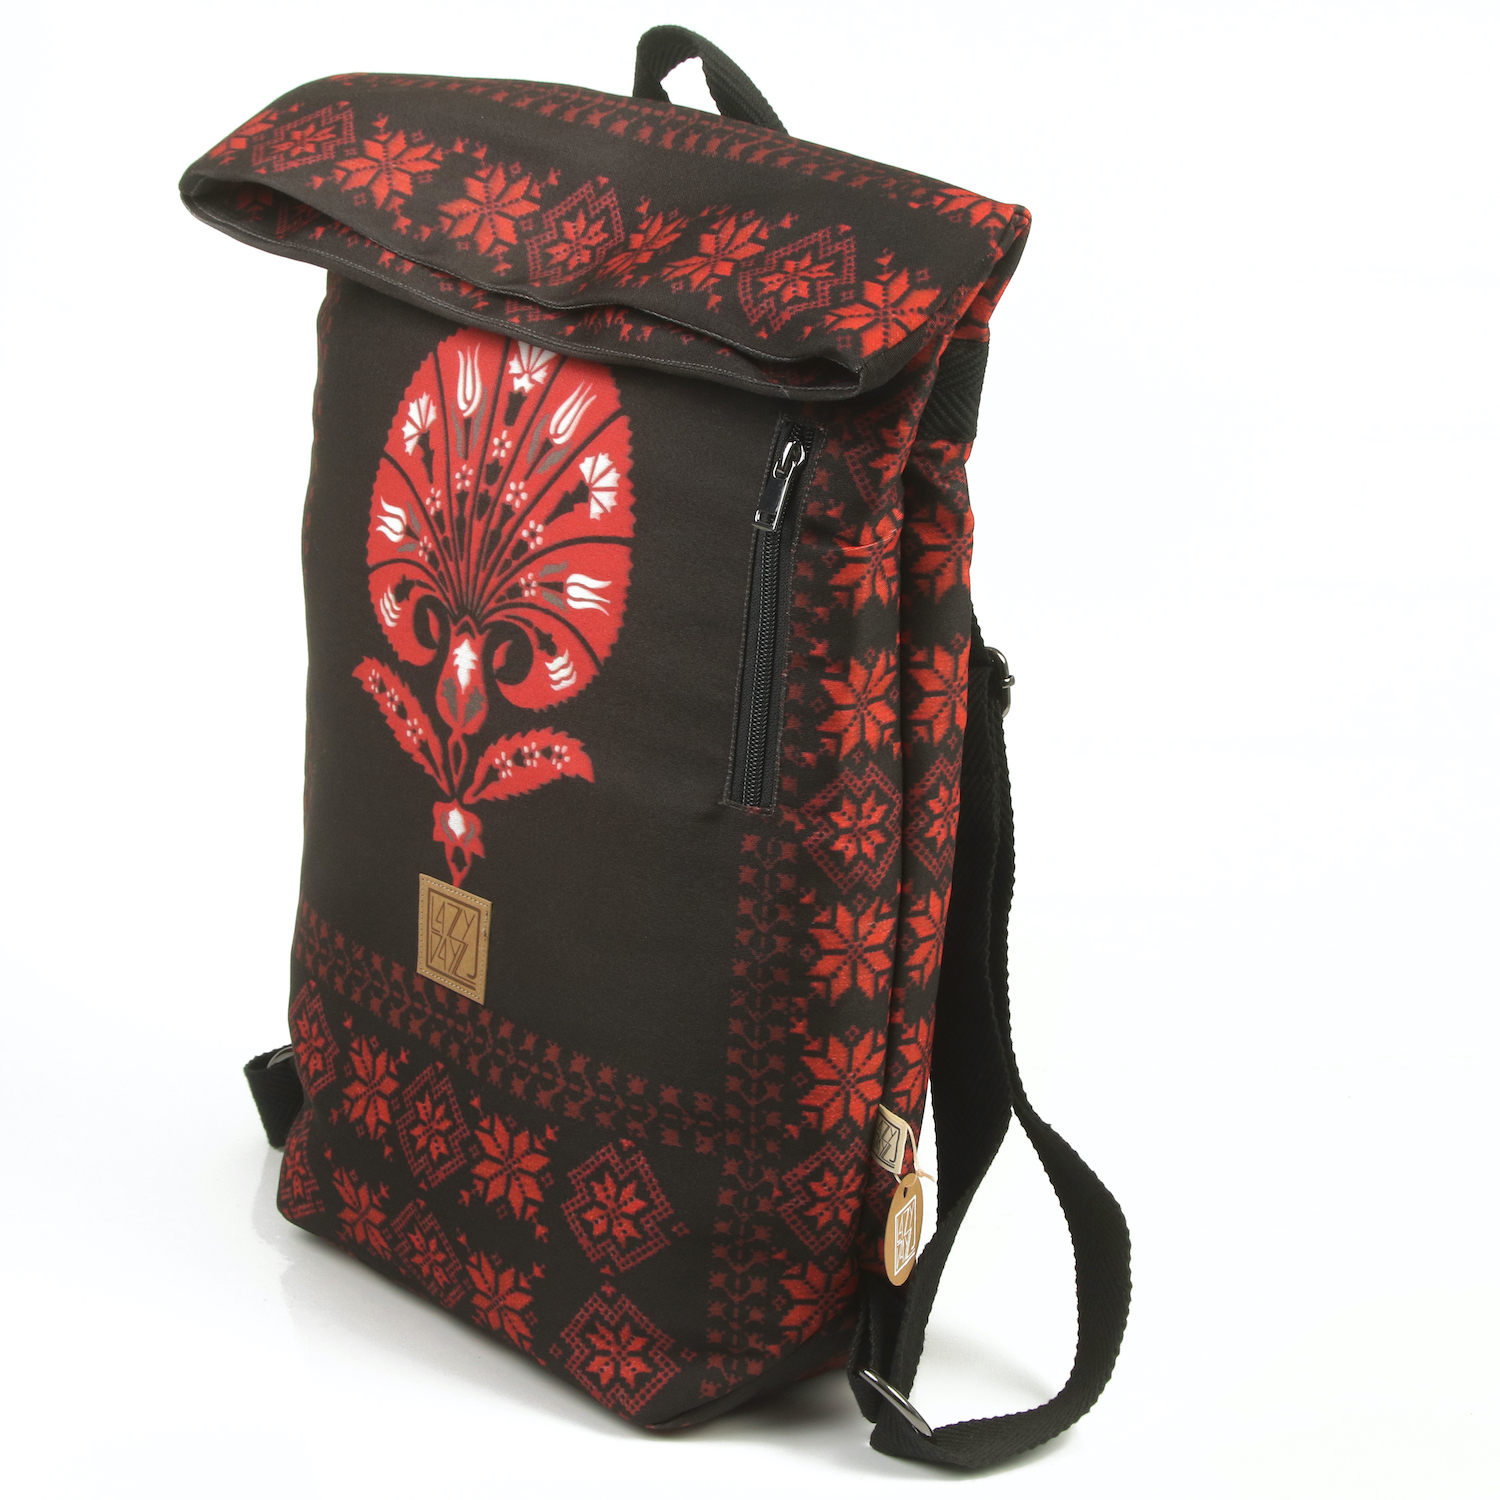 LazyDayz-Designs-Backpack-γυναικείος-σάκος-πλάτης-χειροποίητος bb0802b